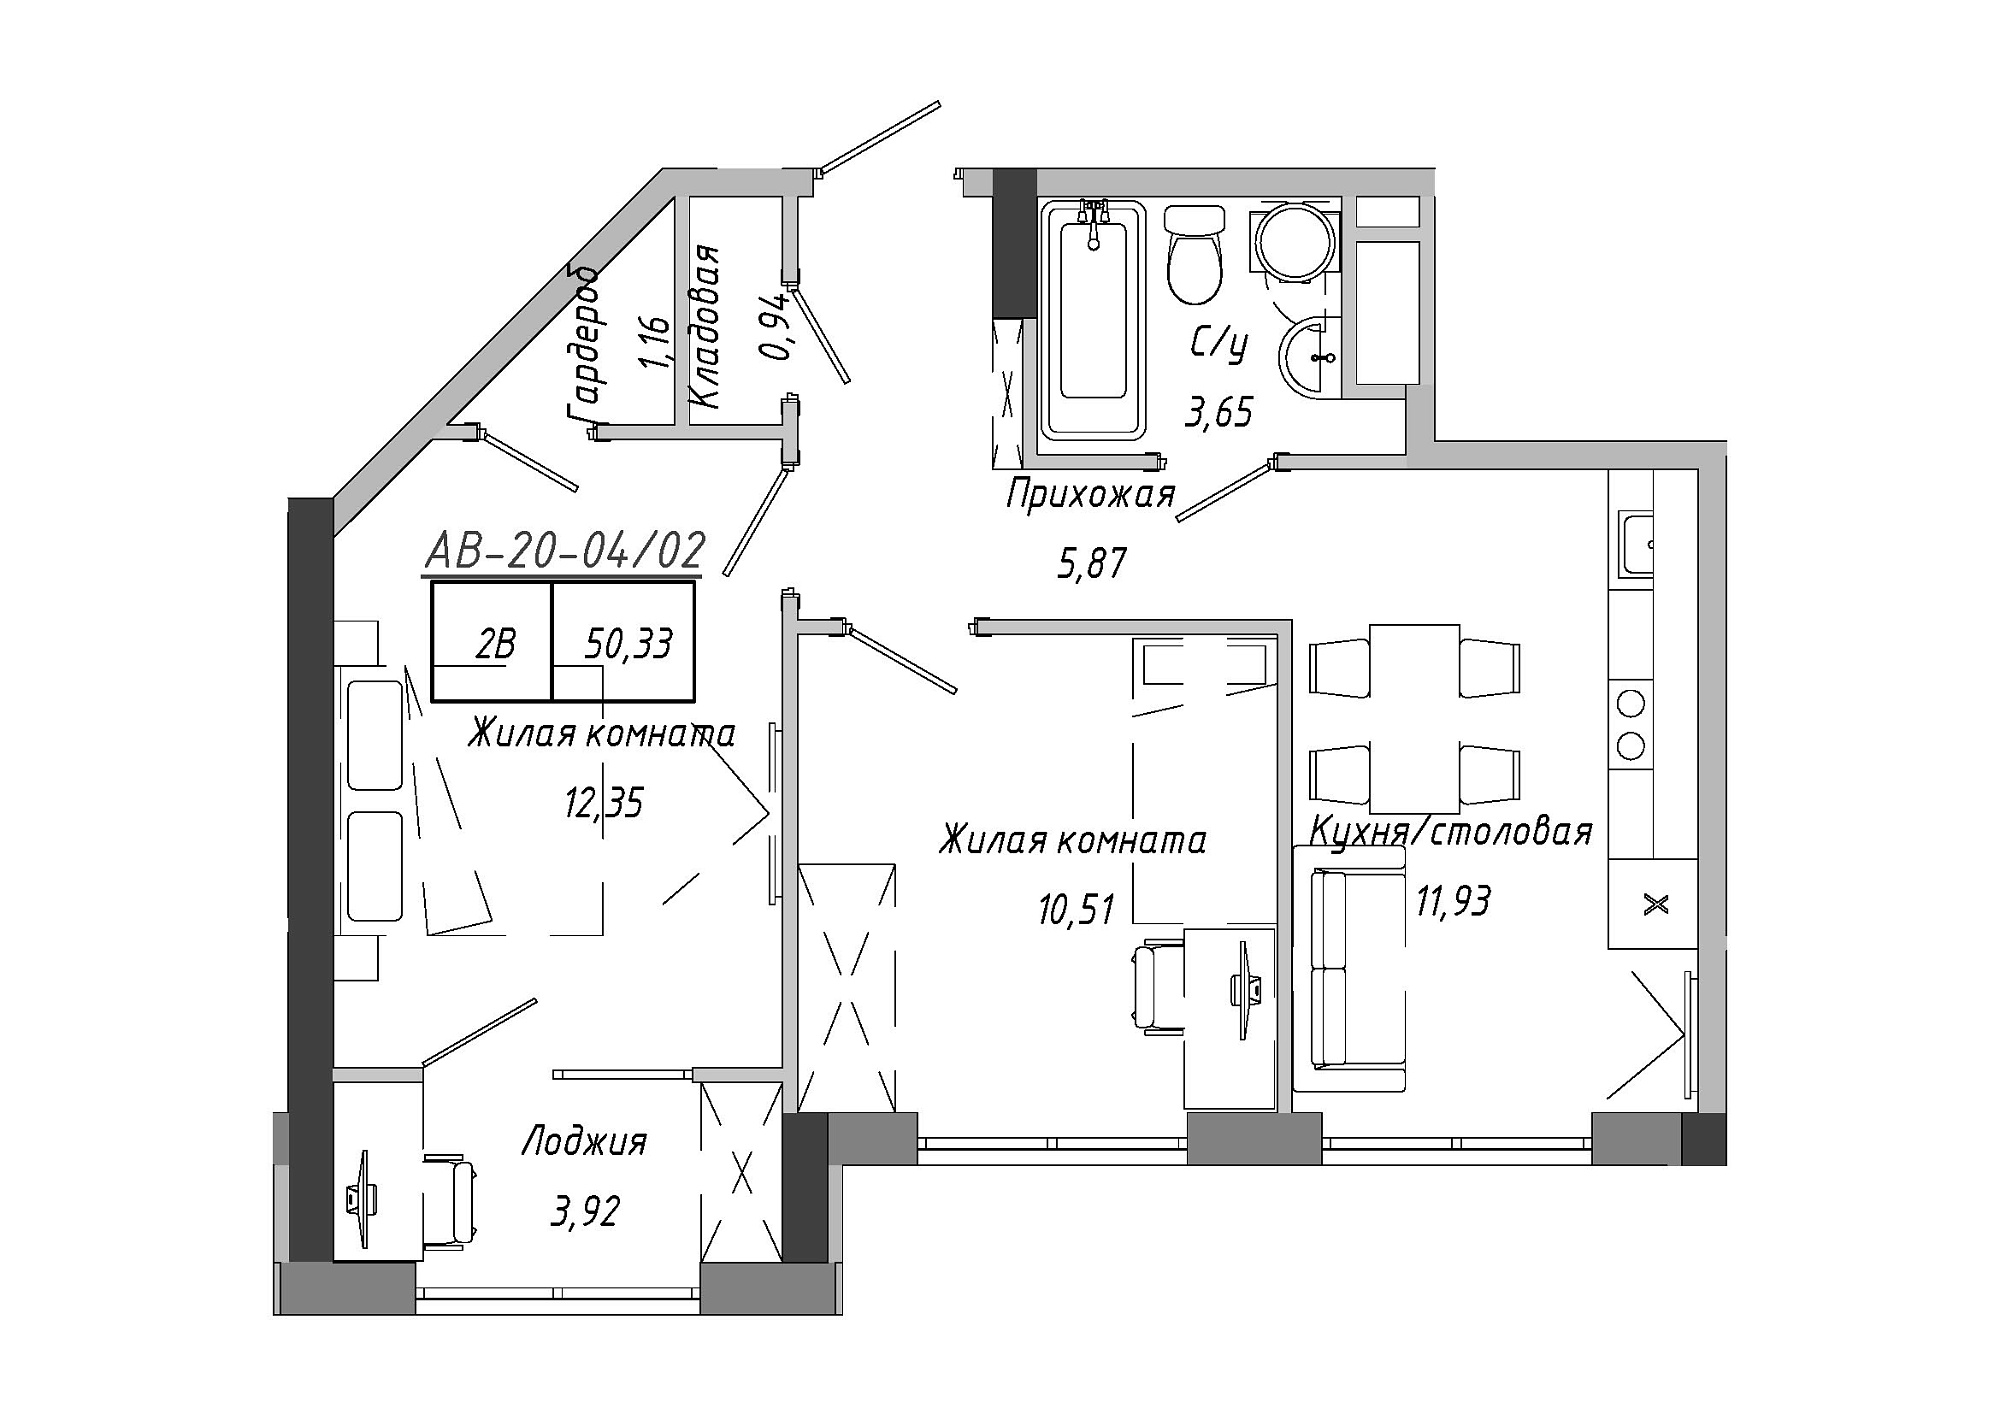 Планировка 2-к квартира площей 50.33м2, AB-20-04/00002.